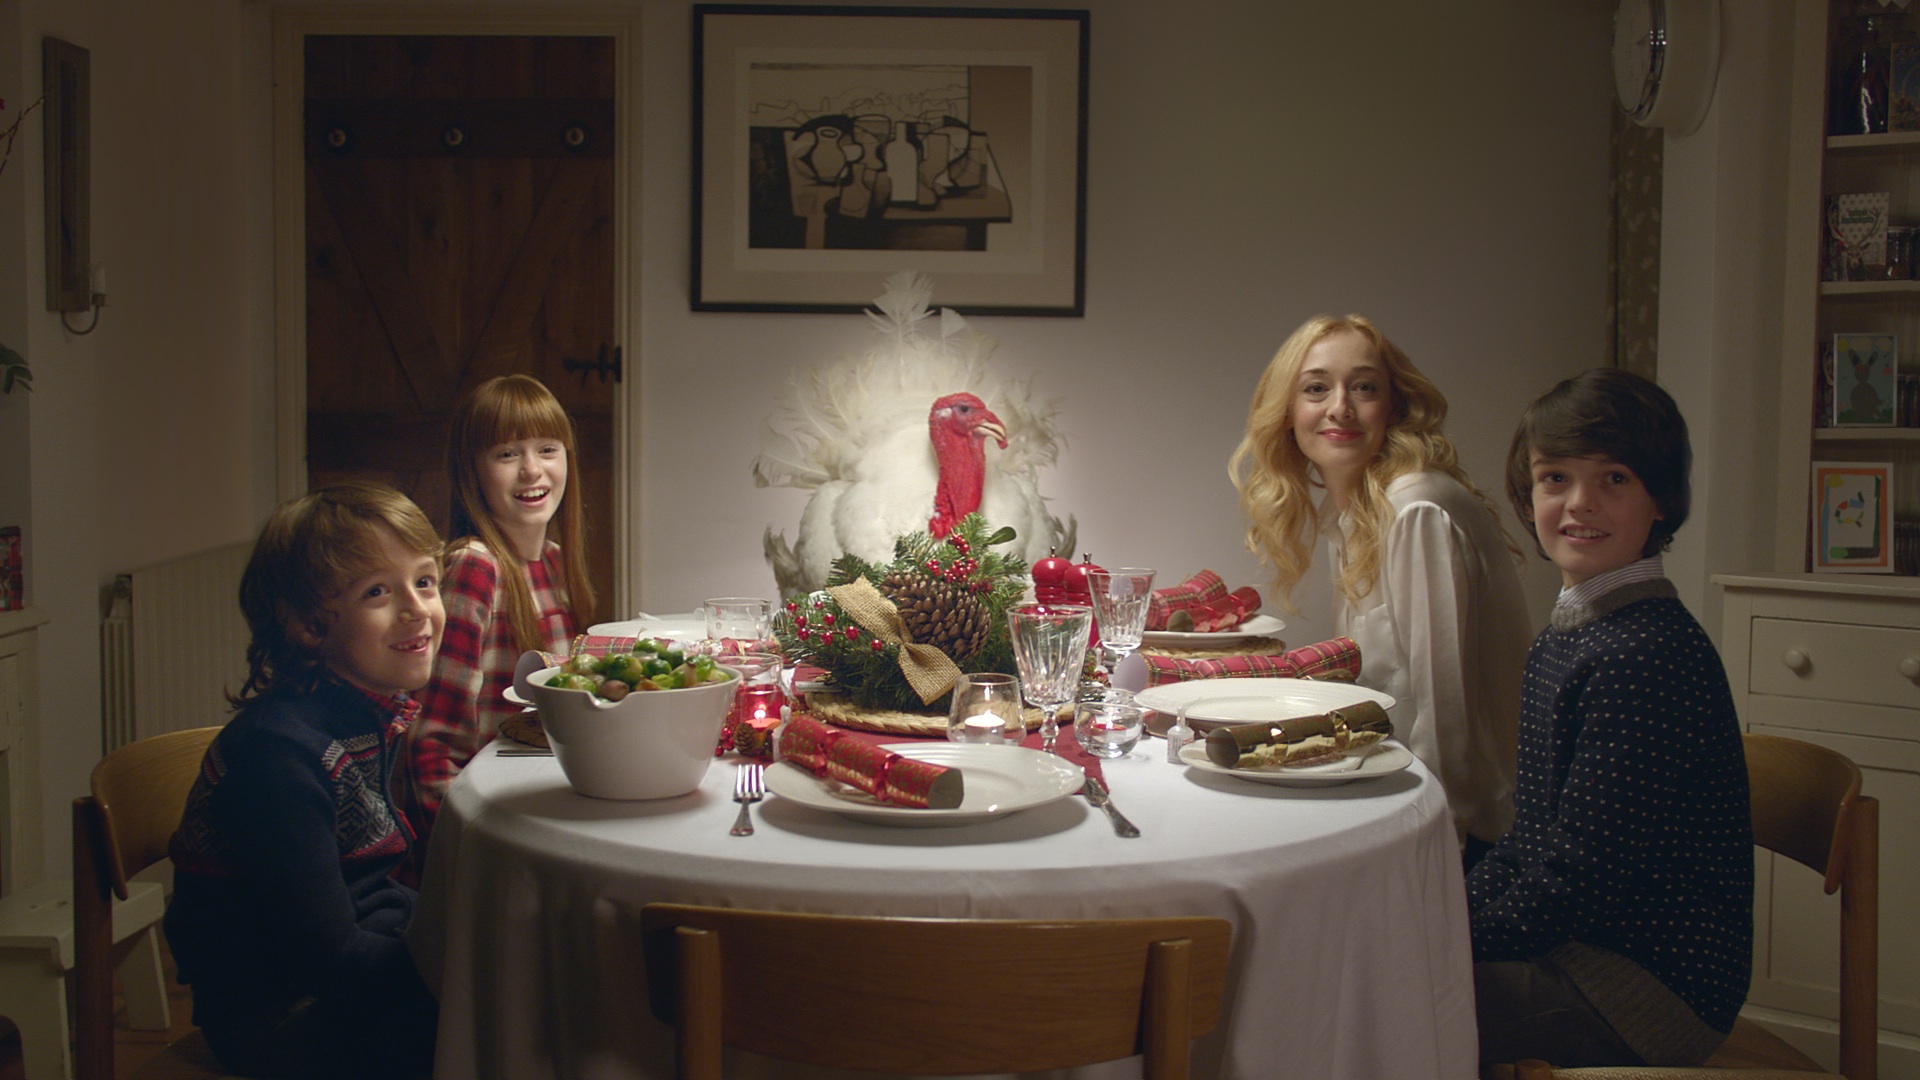 Vodafone Has Turkey for Dinner in Lovely New Christmas Spot